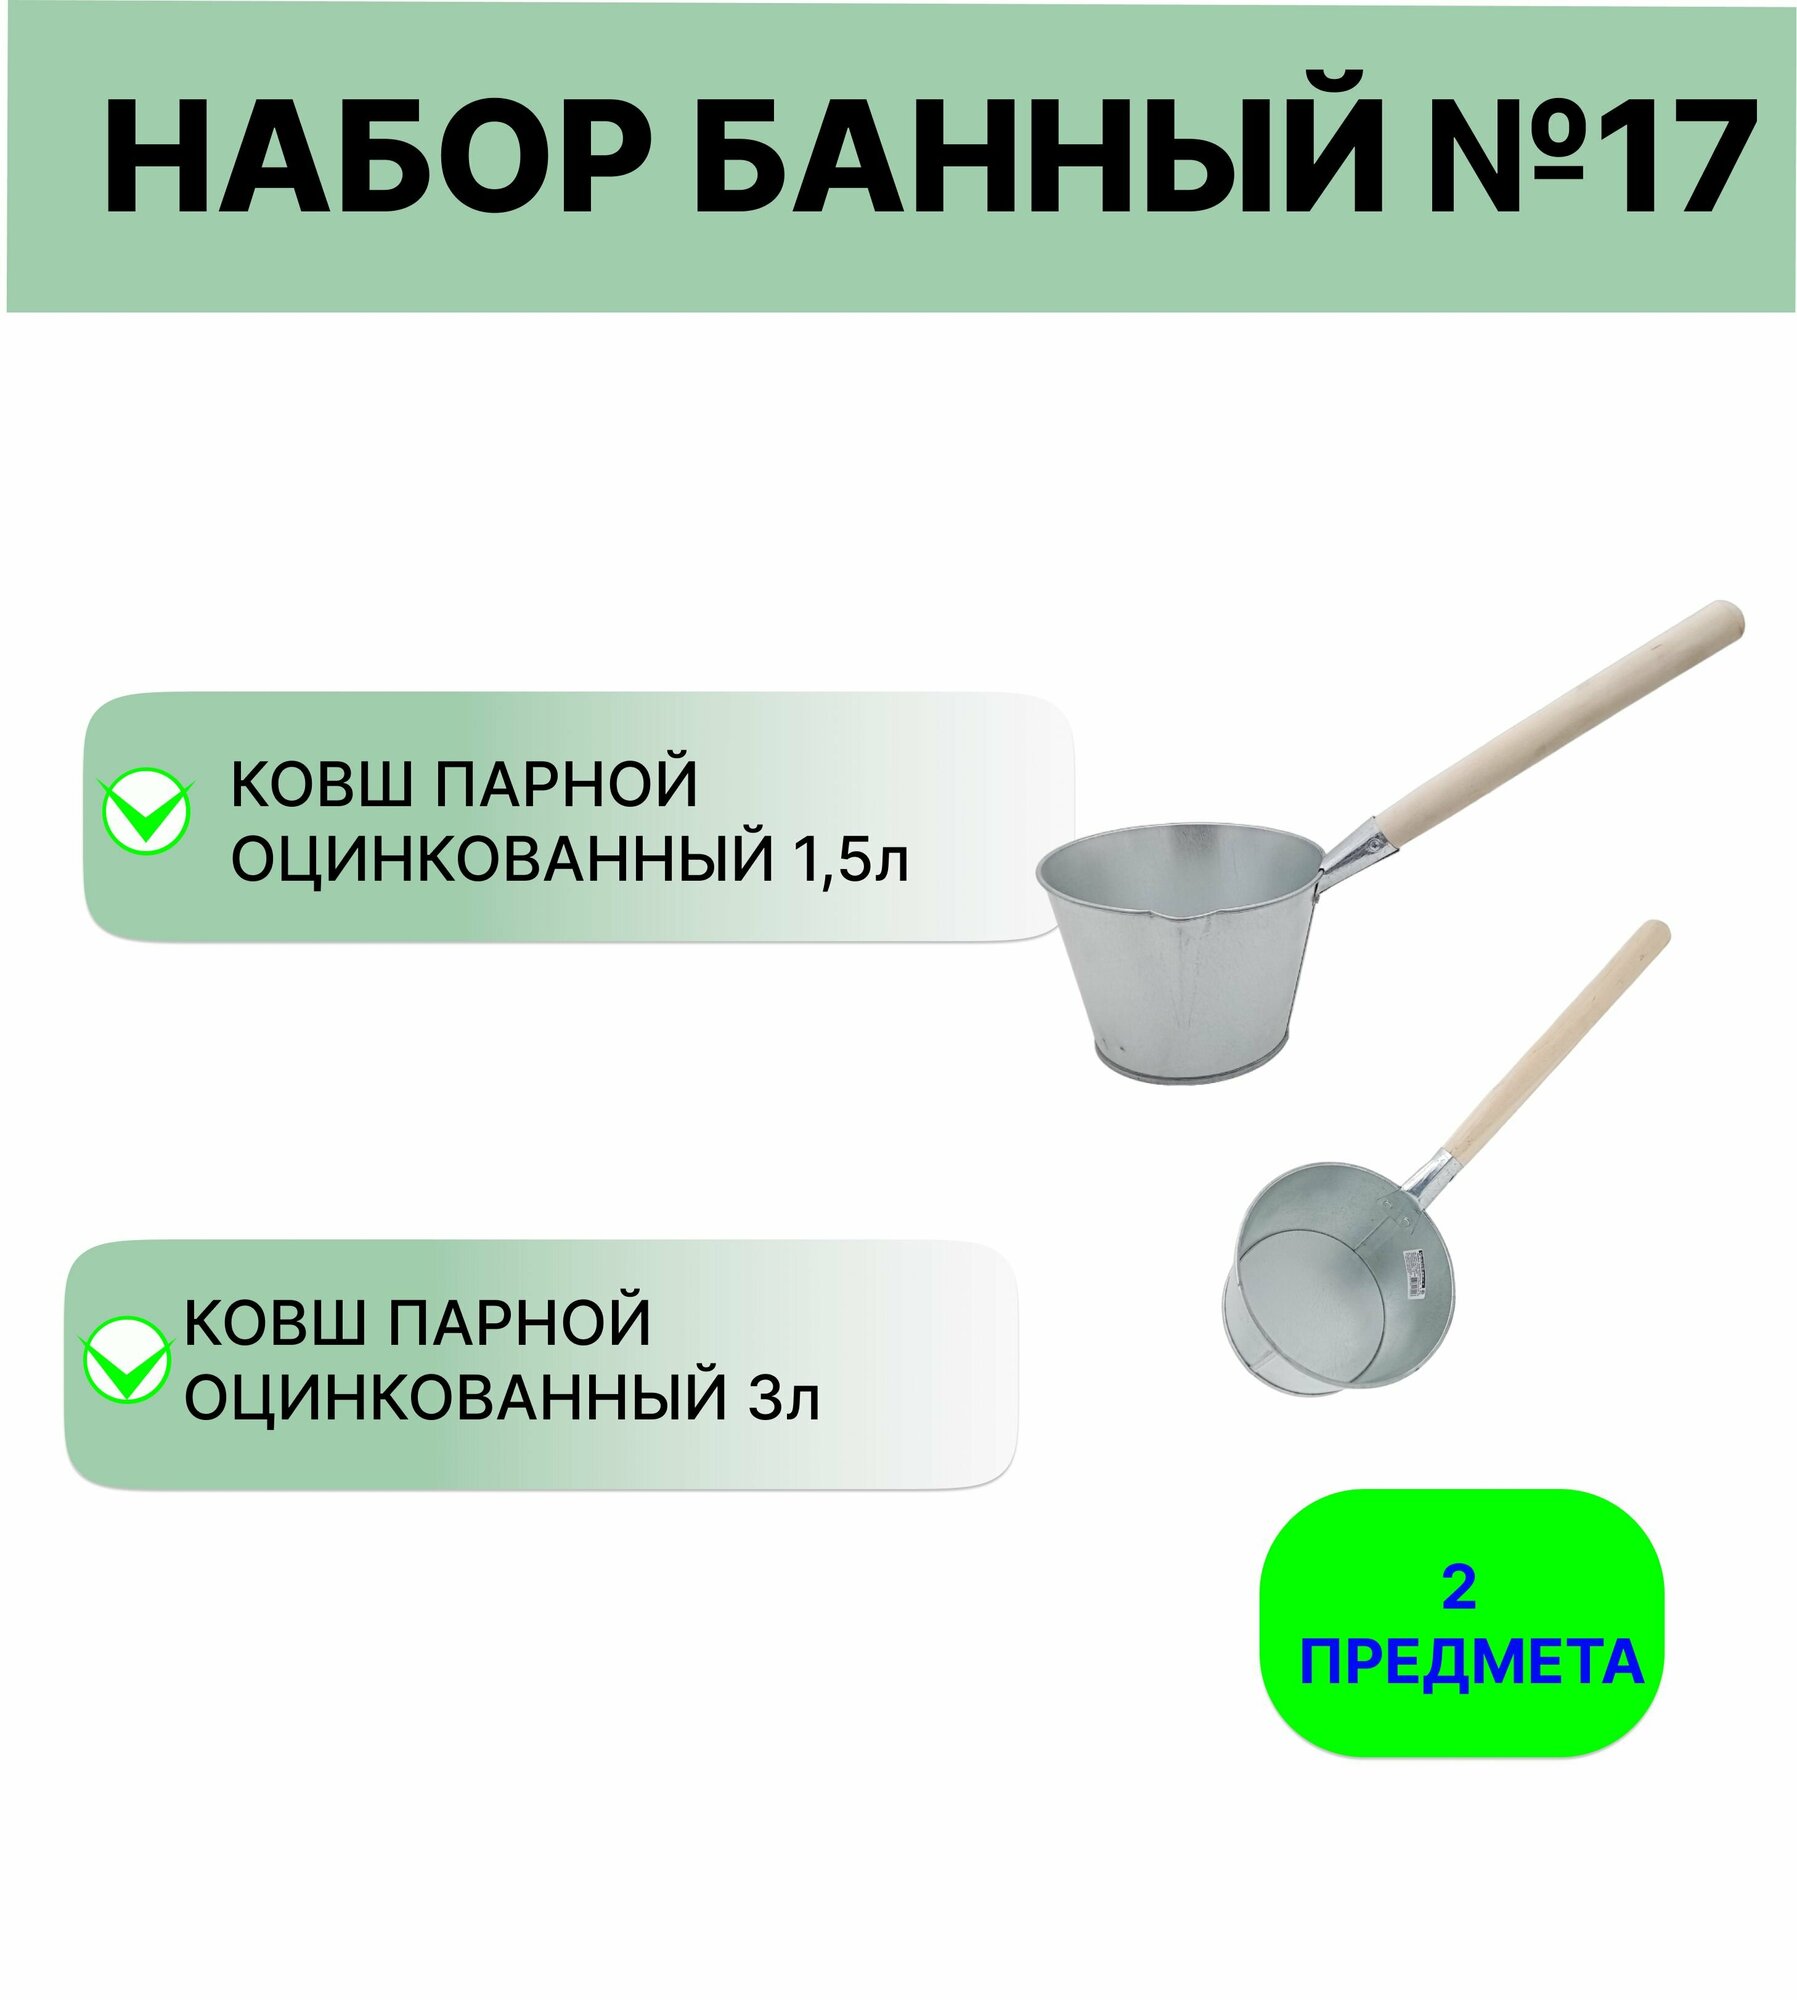 Набор для бани №17 Ковш Урал инвест 15 л и 3 л оцинкованный